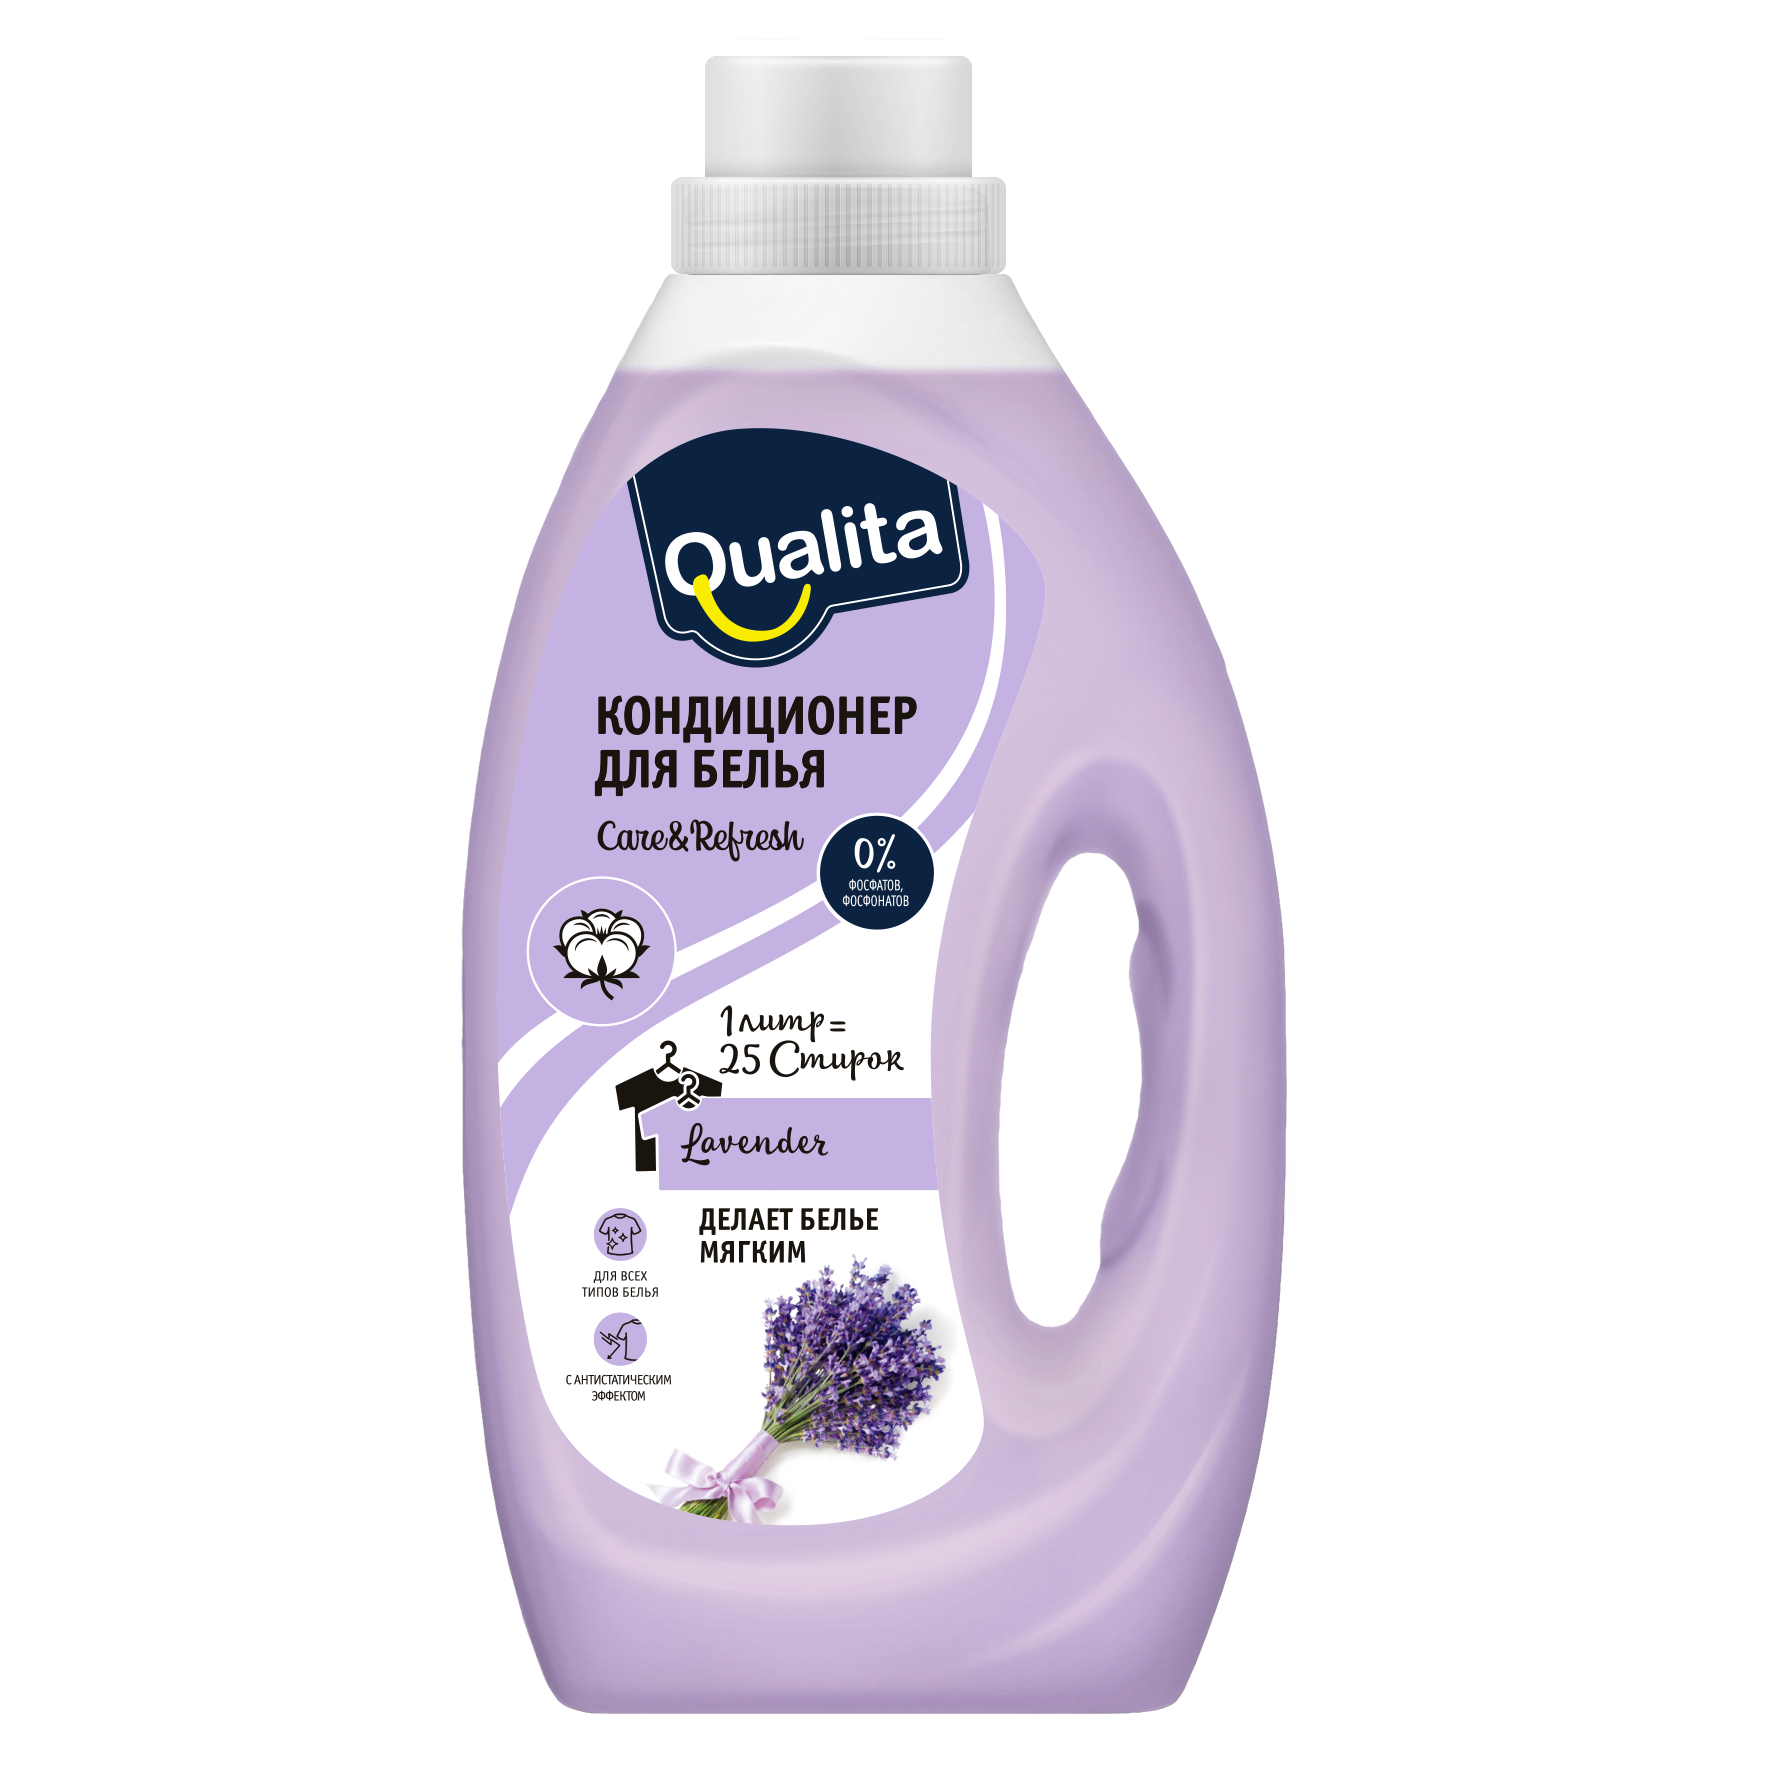 Кондиционер для белья Qualita Lavender с экстрактом хлопка для всех типов белья, бутылка, 1 л кондиционер для белья qualita lavender с экстрактом хлопка для всех типов белья бутылка 1 л